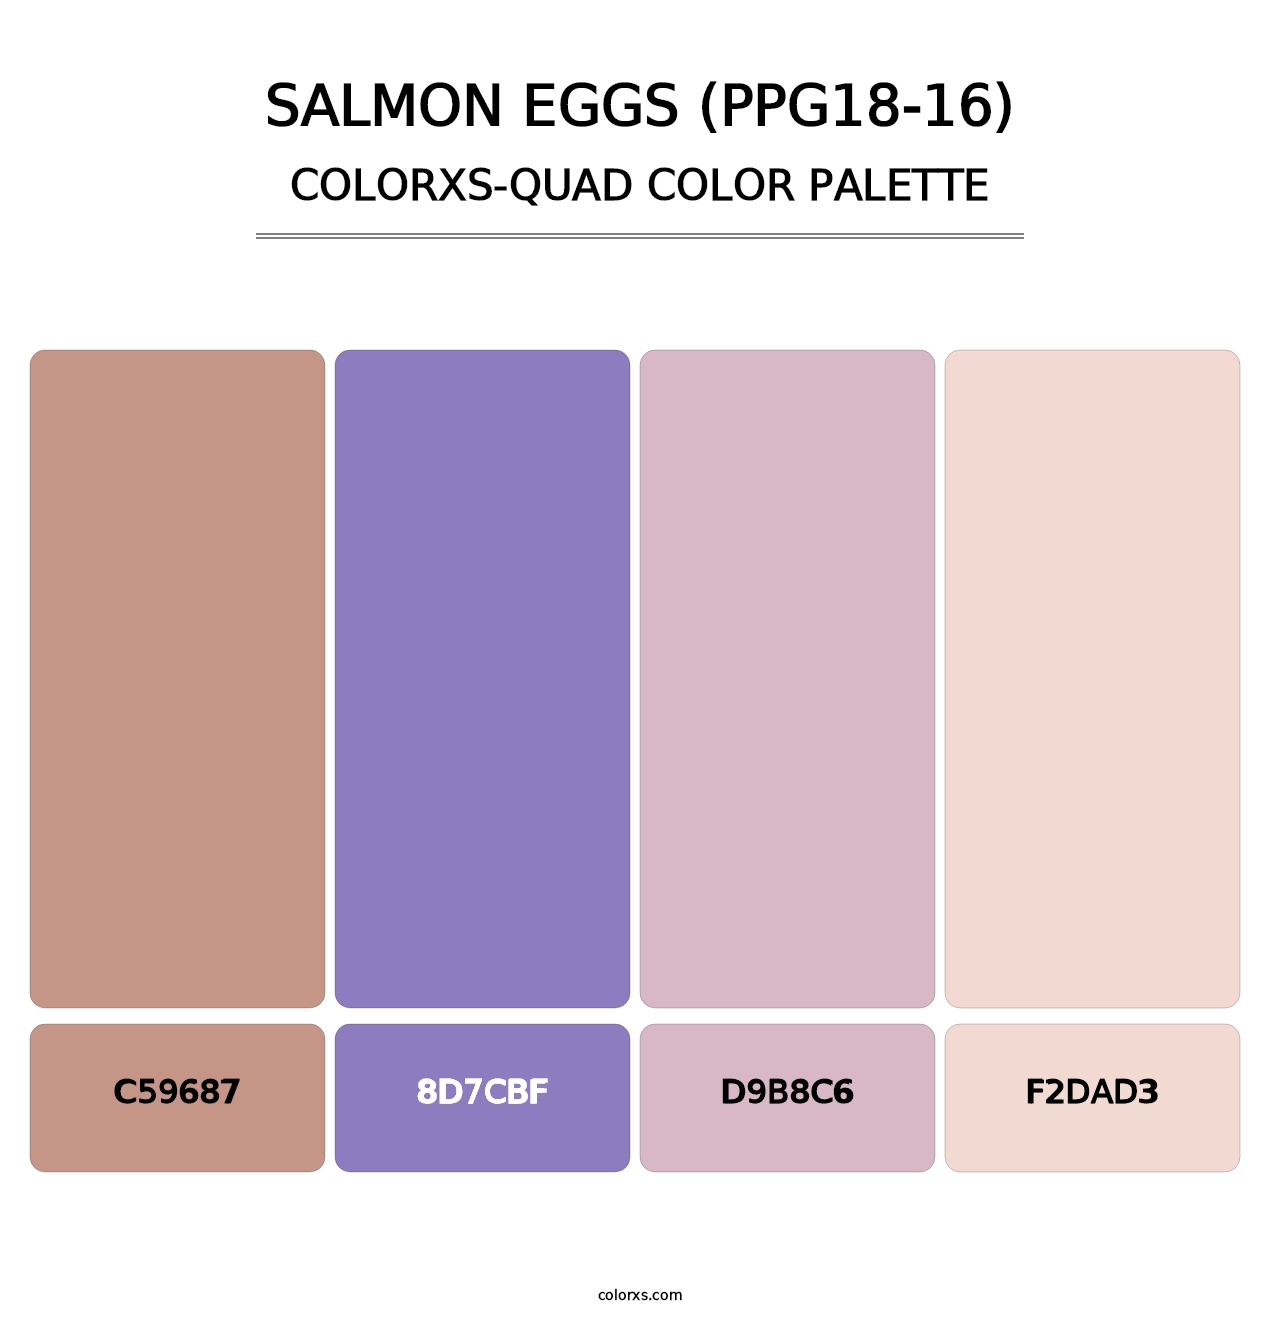 Salmon Eggs (PPG18-16) - Colorxs Quad Palette